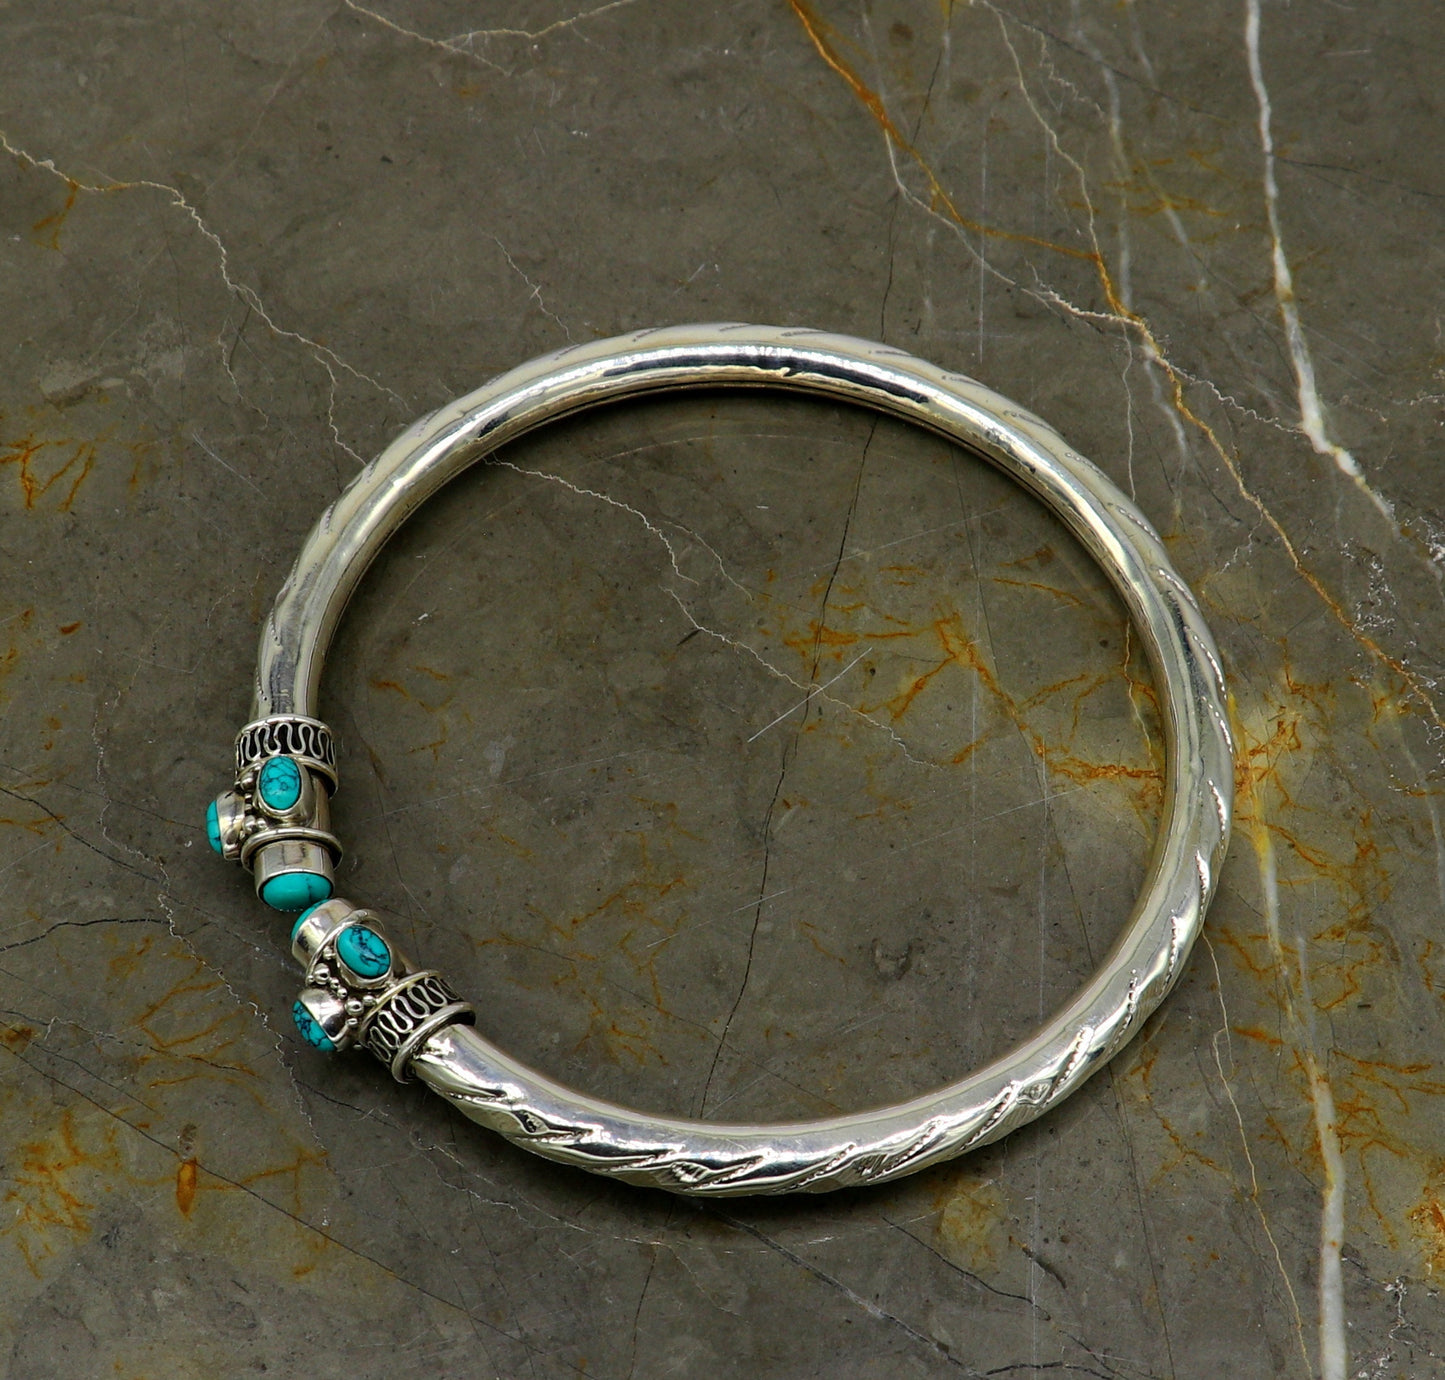 Stylish customized design Ankle kada, ankle bangle bracelet with gorgeous turquoise stone, amazing brides made wedding gifting anklets sak15 - TRIBAL ORNAMENTS